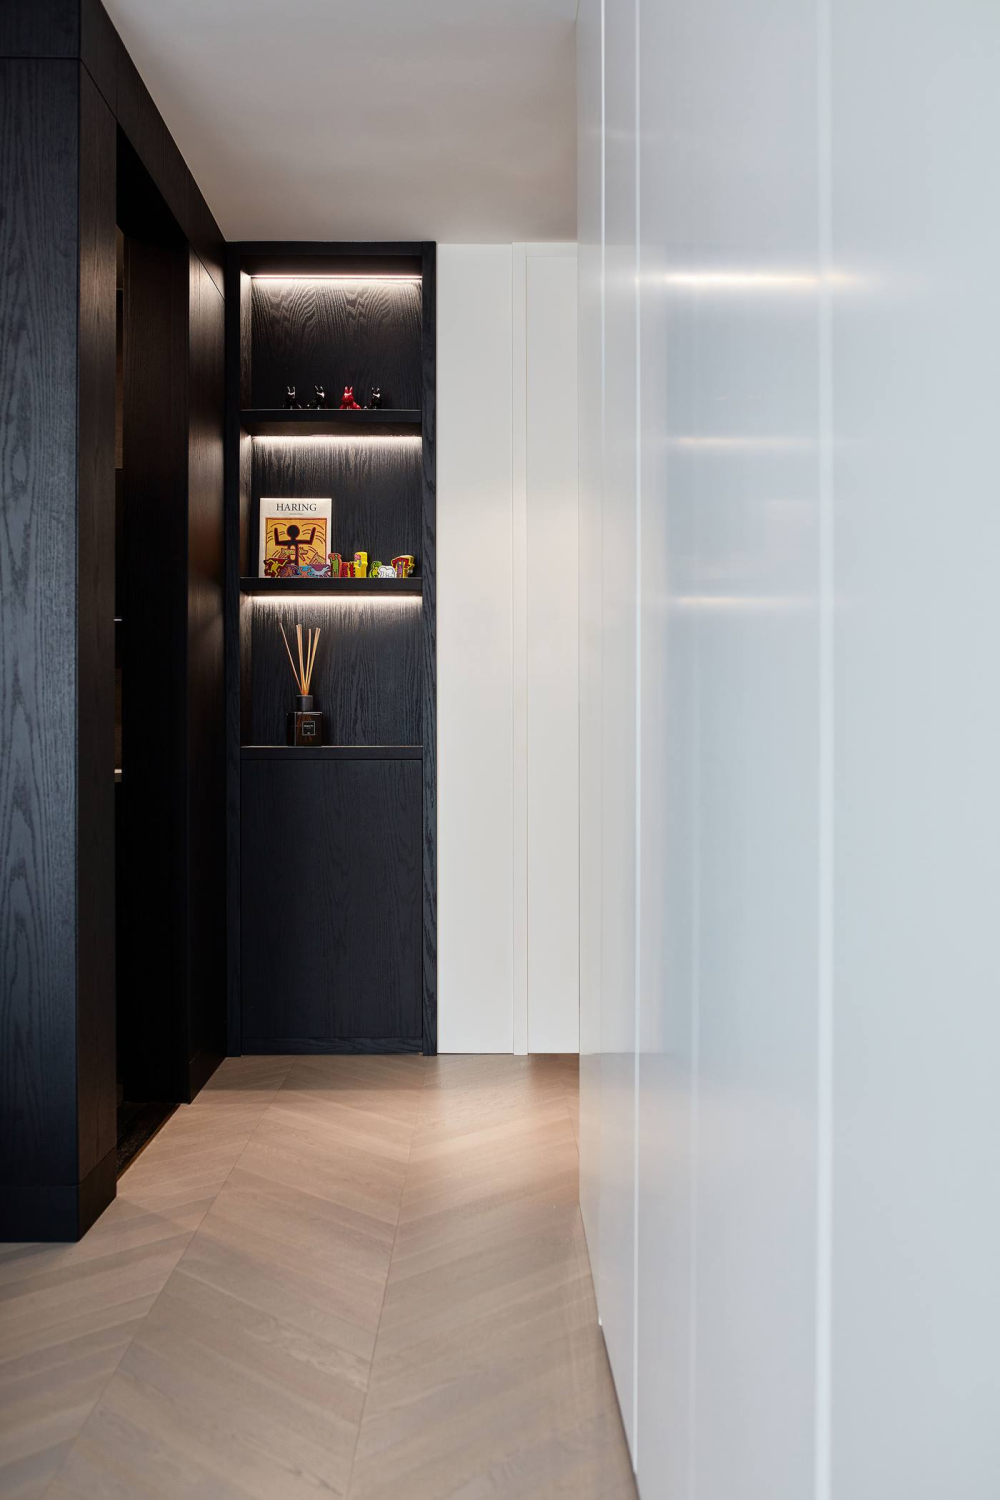 現代簡約風格室內家裝案例效果圖-走廊